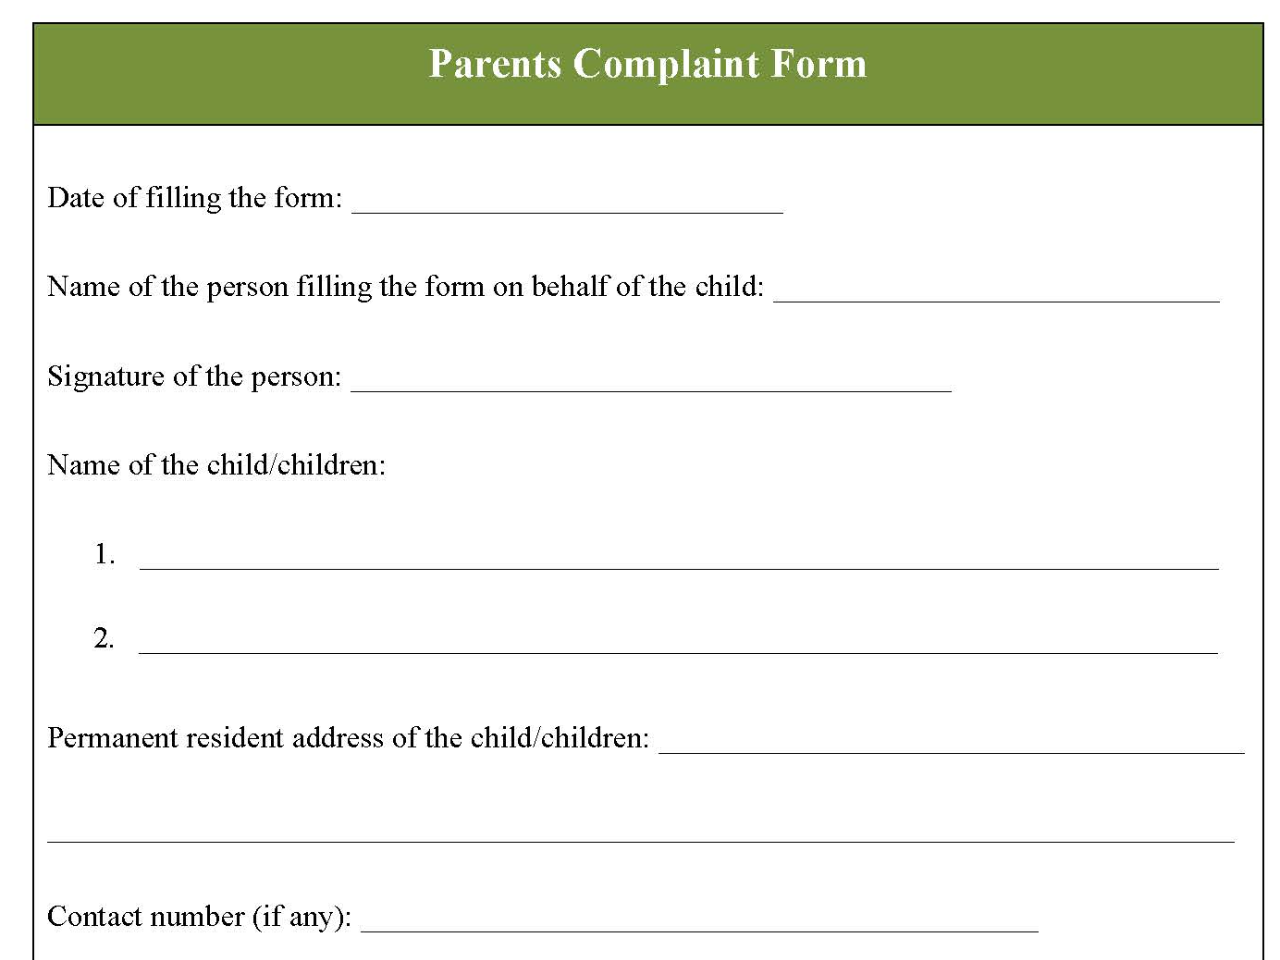 Parents Complaint Form